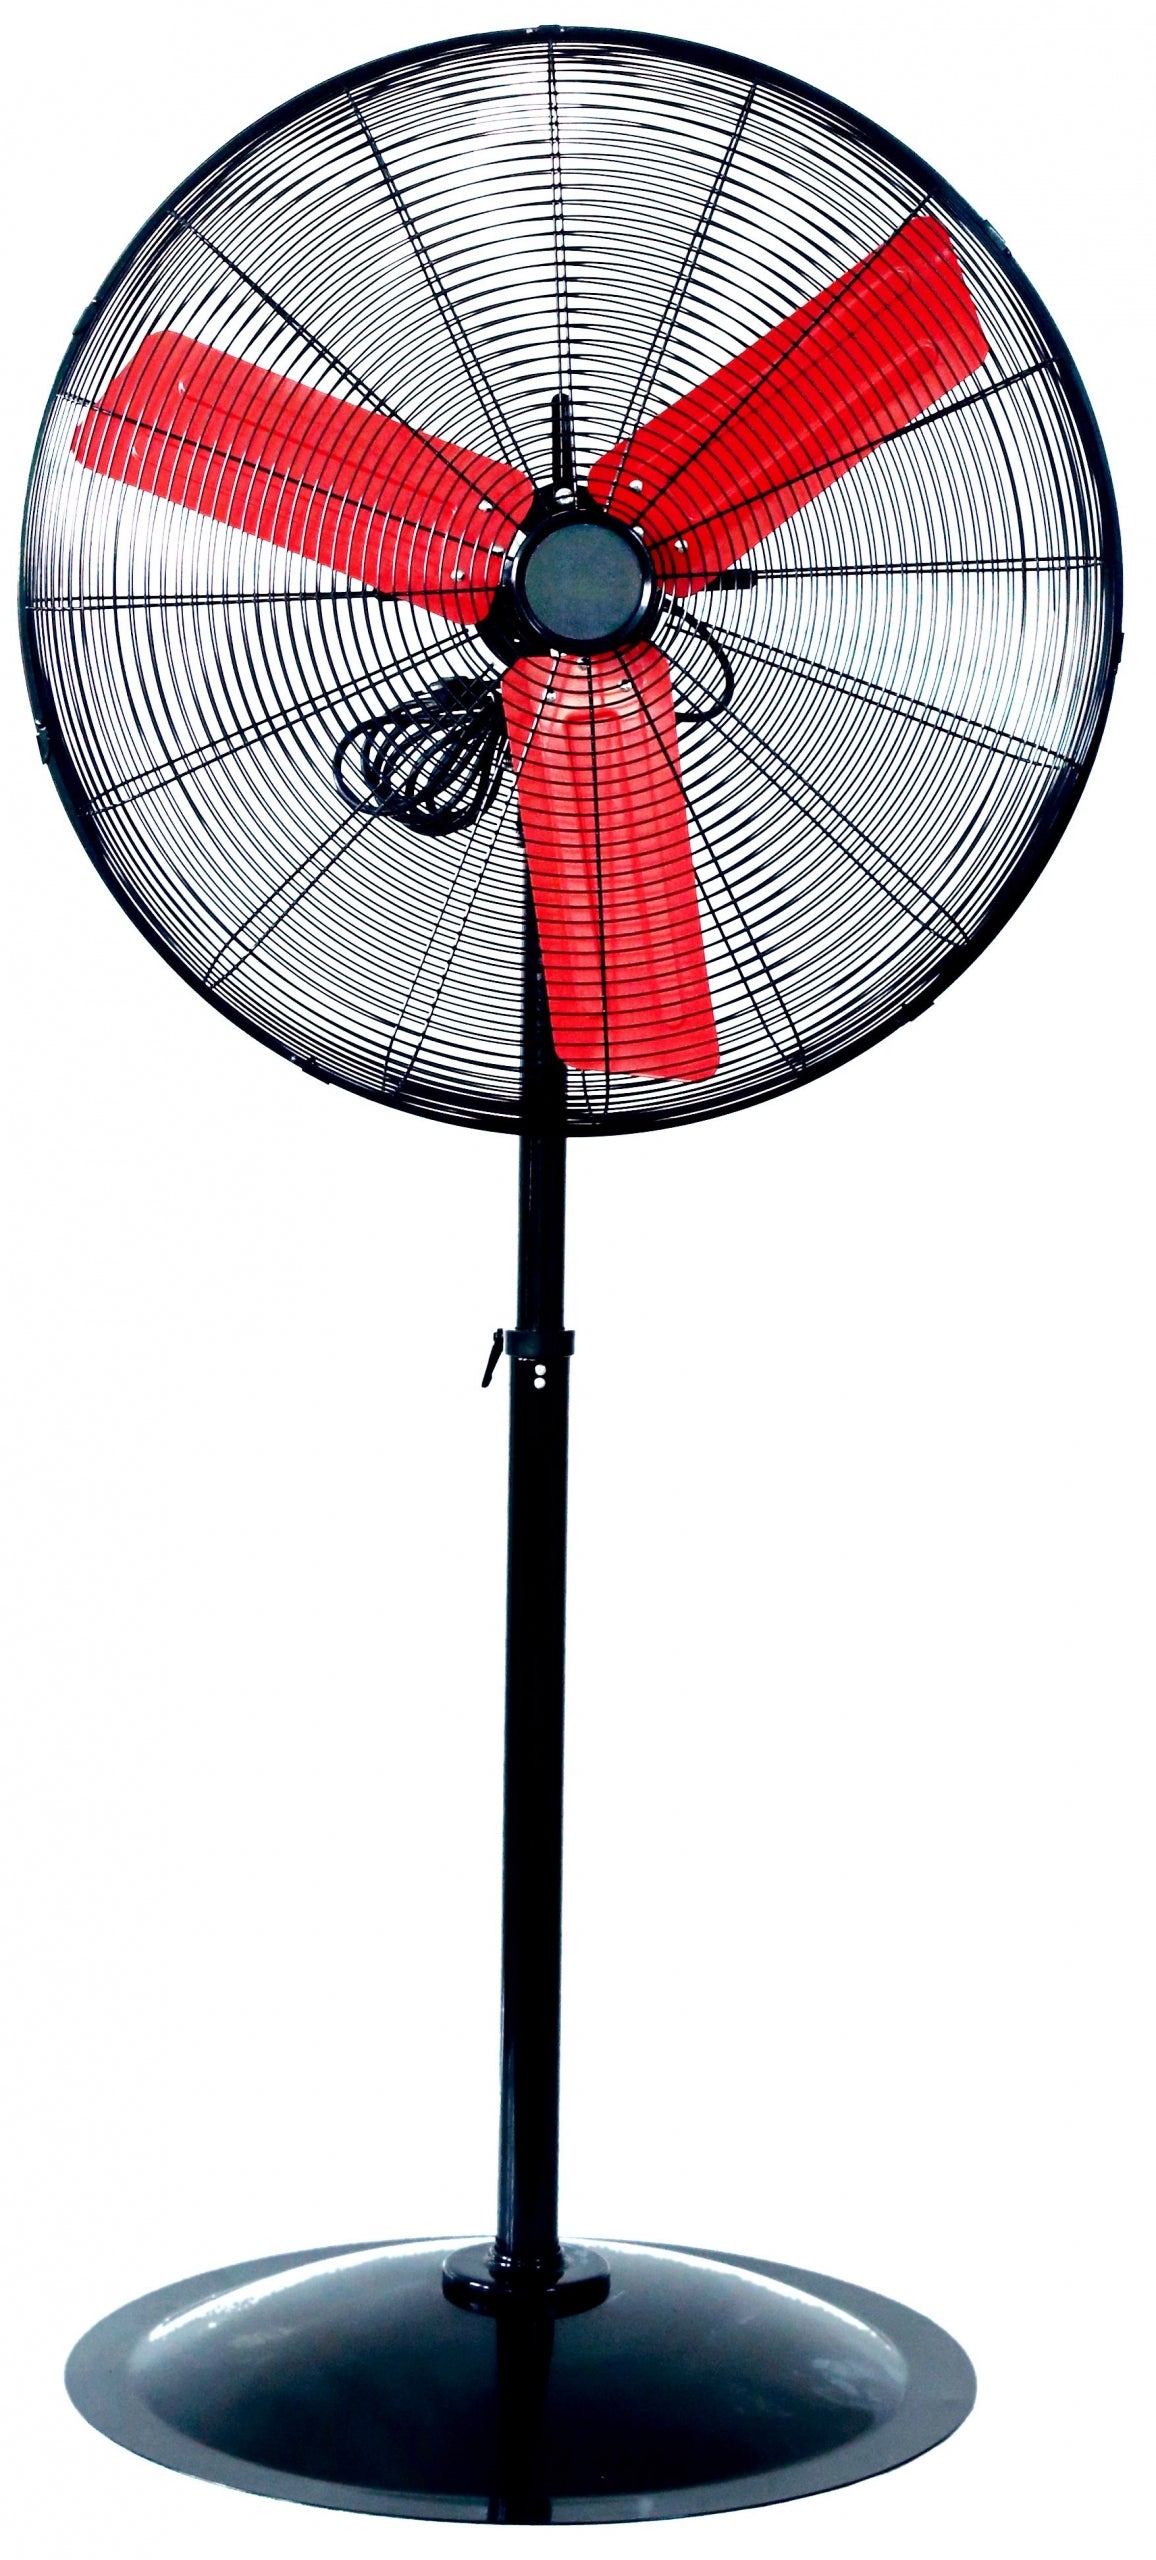 Powerbuilt 76cm High Velocity Pedestal Oscillating Fan